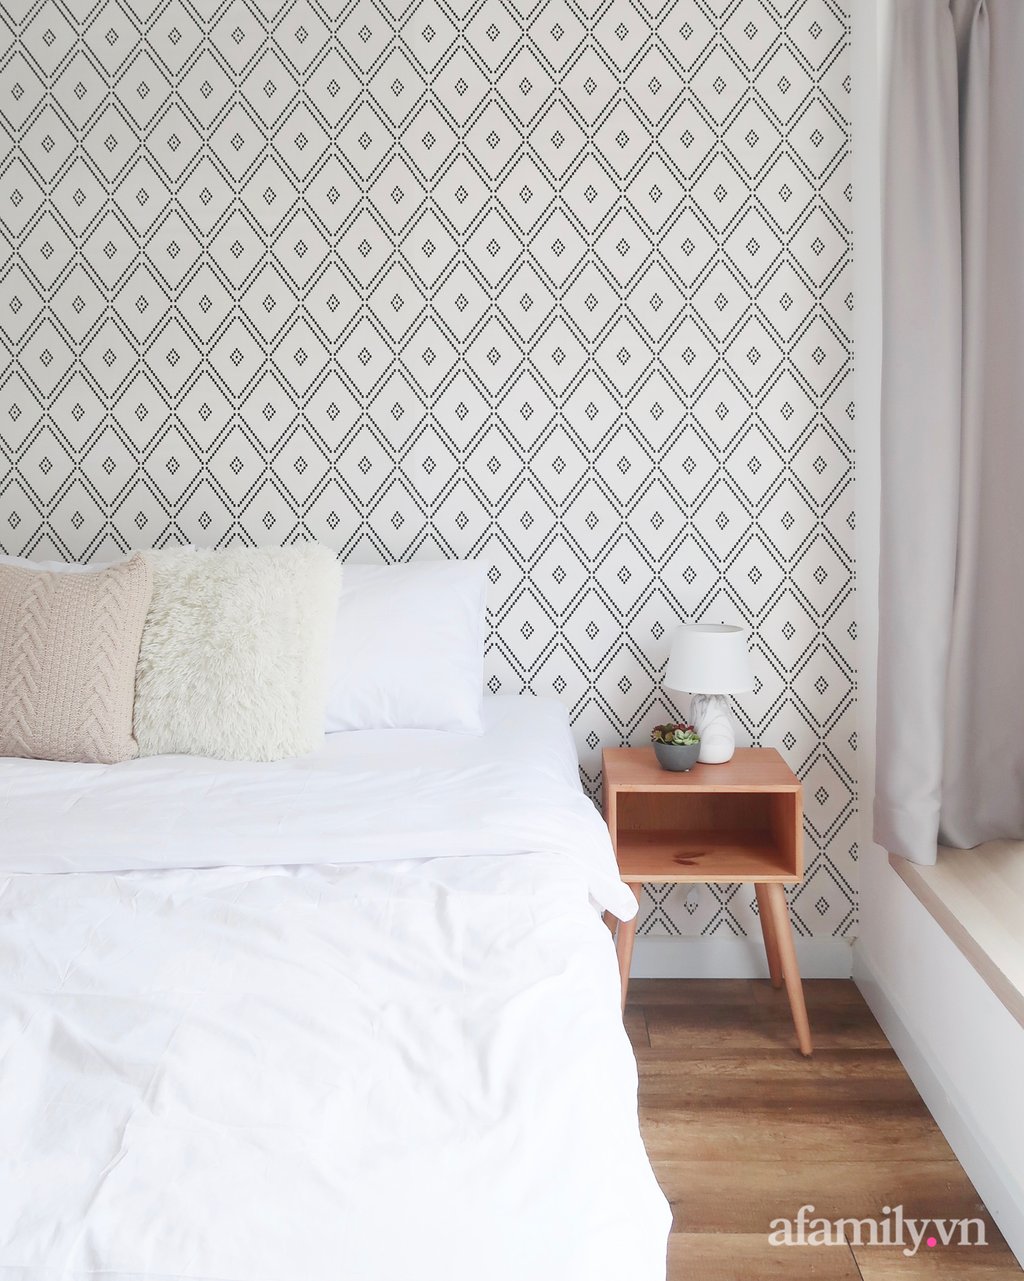 Phòng ngủ với tông màu trắng cơ bản. Những chiếc gối bông êm ái và giấy dán tường hoa văn được sử dụng làm điểm nhấn cho không gian.